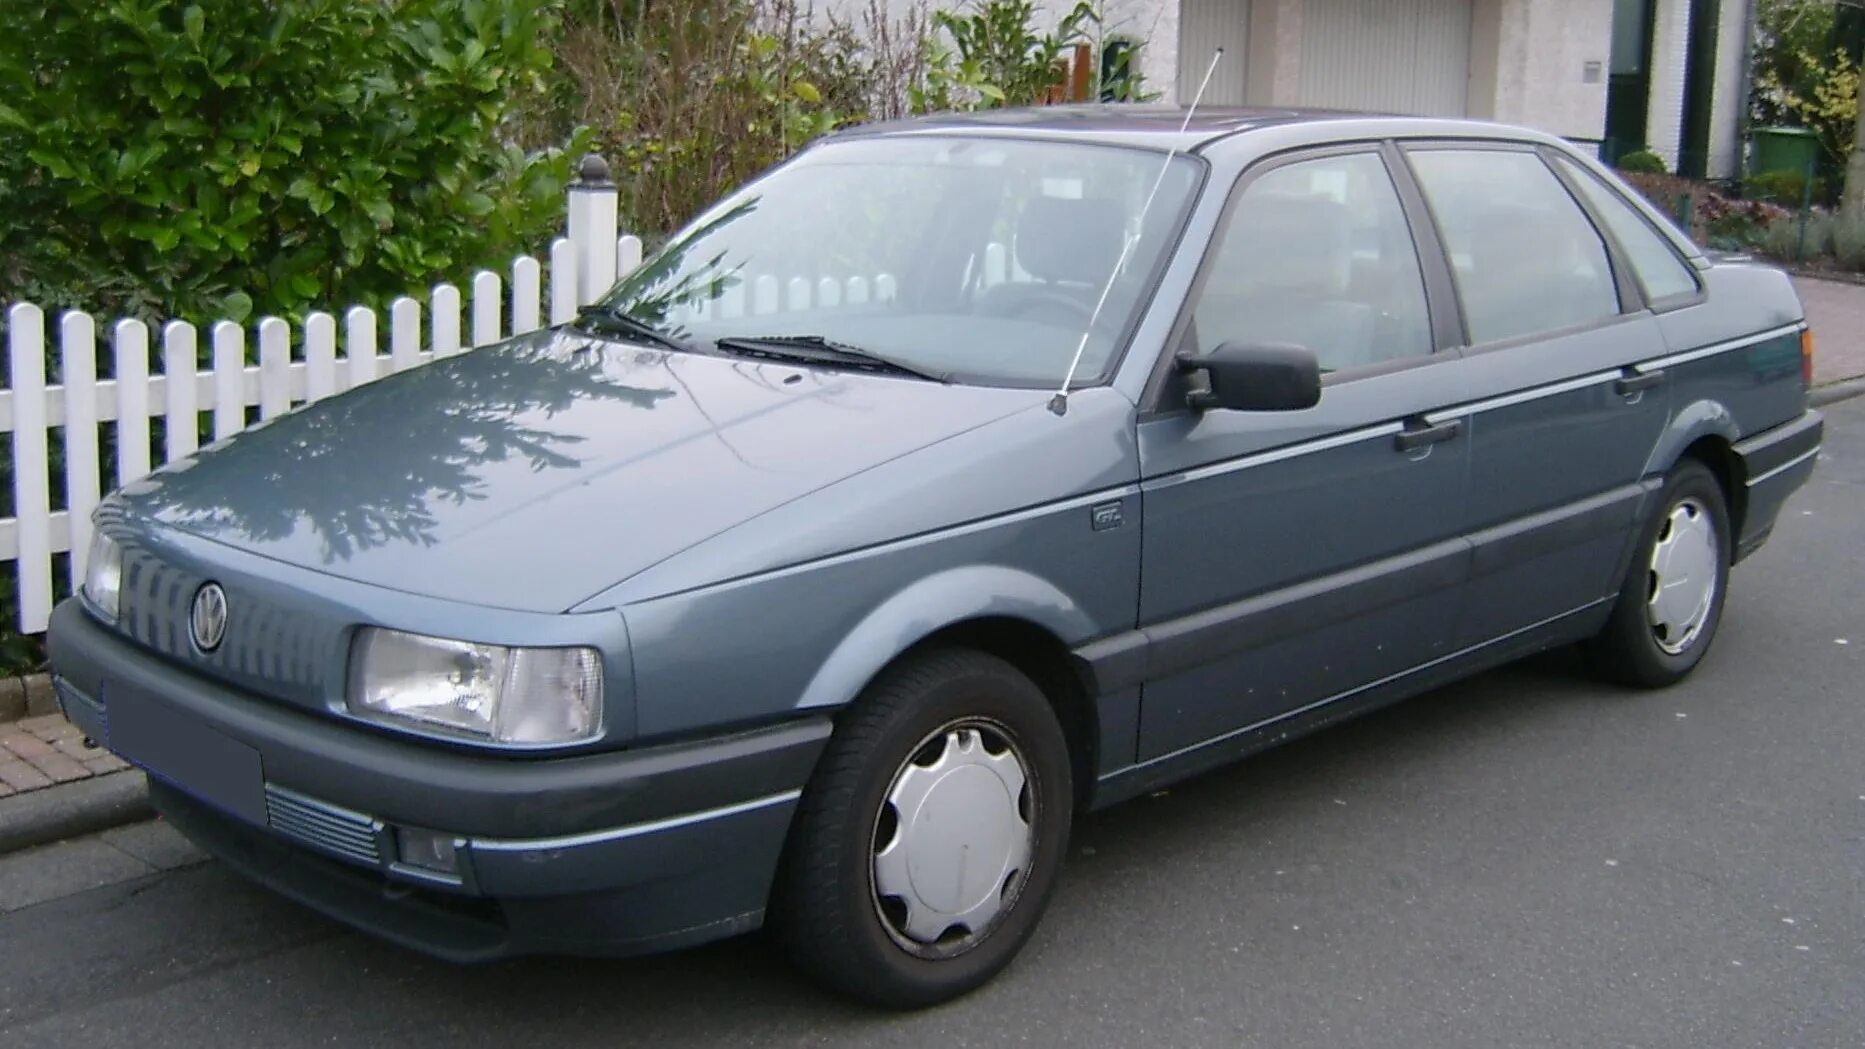 Купить фольксваген пассат в белоруссии. VW Passat b3 седан. Фольксваген Пассат b3. Фольксваген б3 седан. Volkswagen Passat b3 седан 1990.